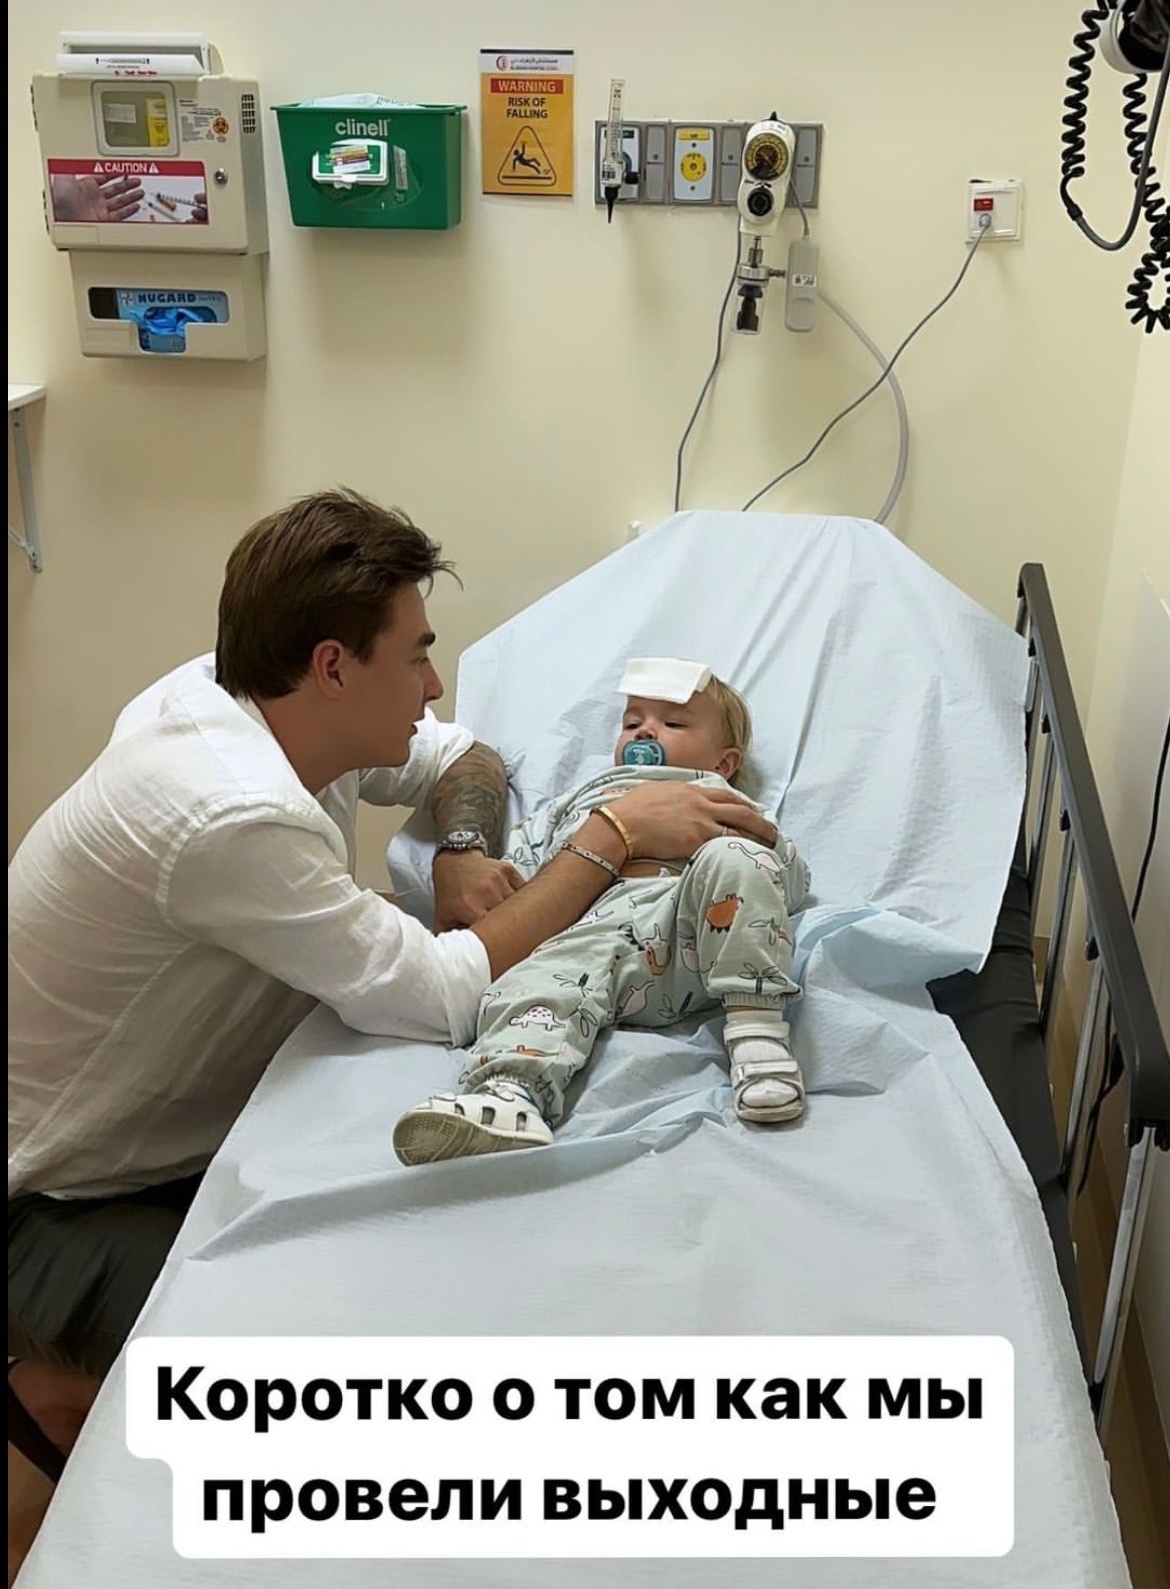 "Няня забила": Младший сын Кати Жужи попал в больницу с травмой головы
